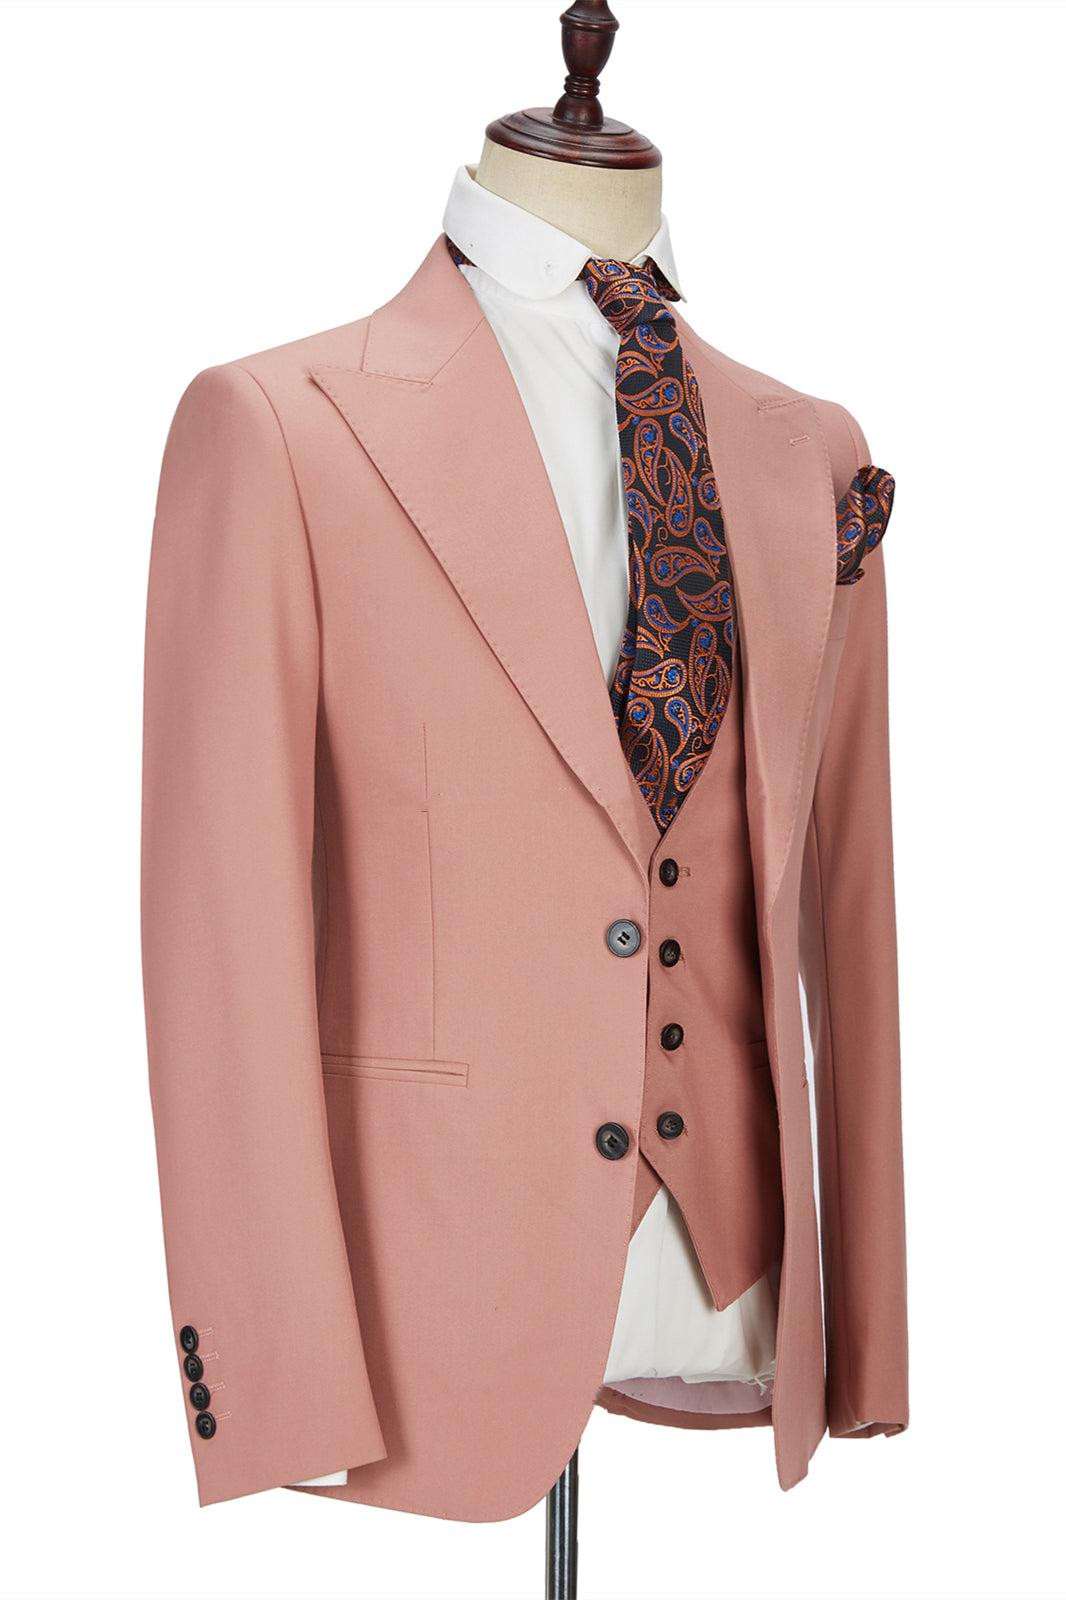 Ivan Three Pieces Coral Pink Two Buttons Peak Lapel Men's Suit-Wedding Suits-BallBride